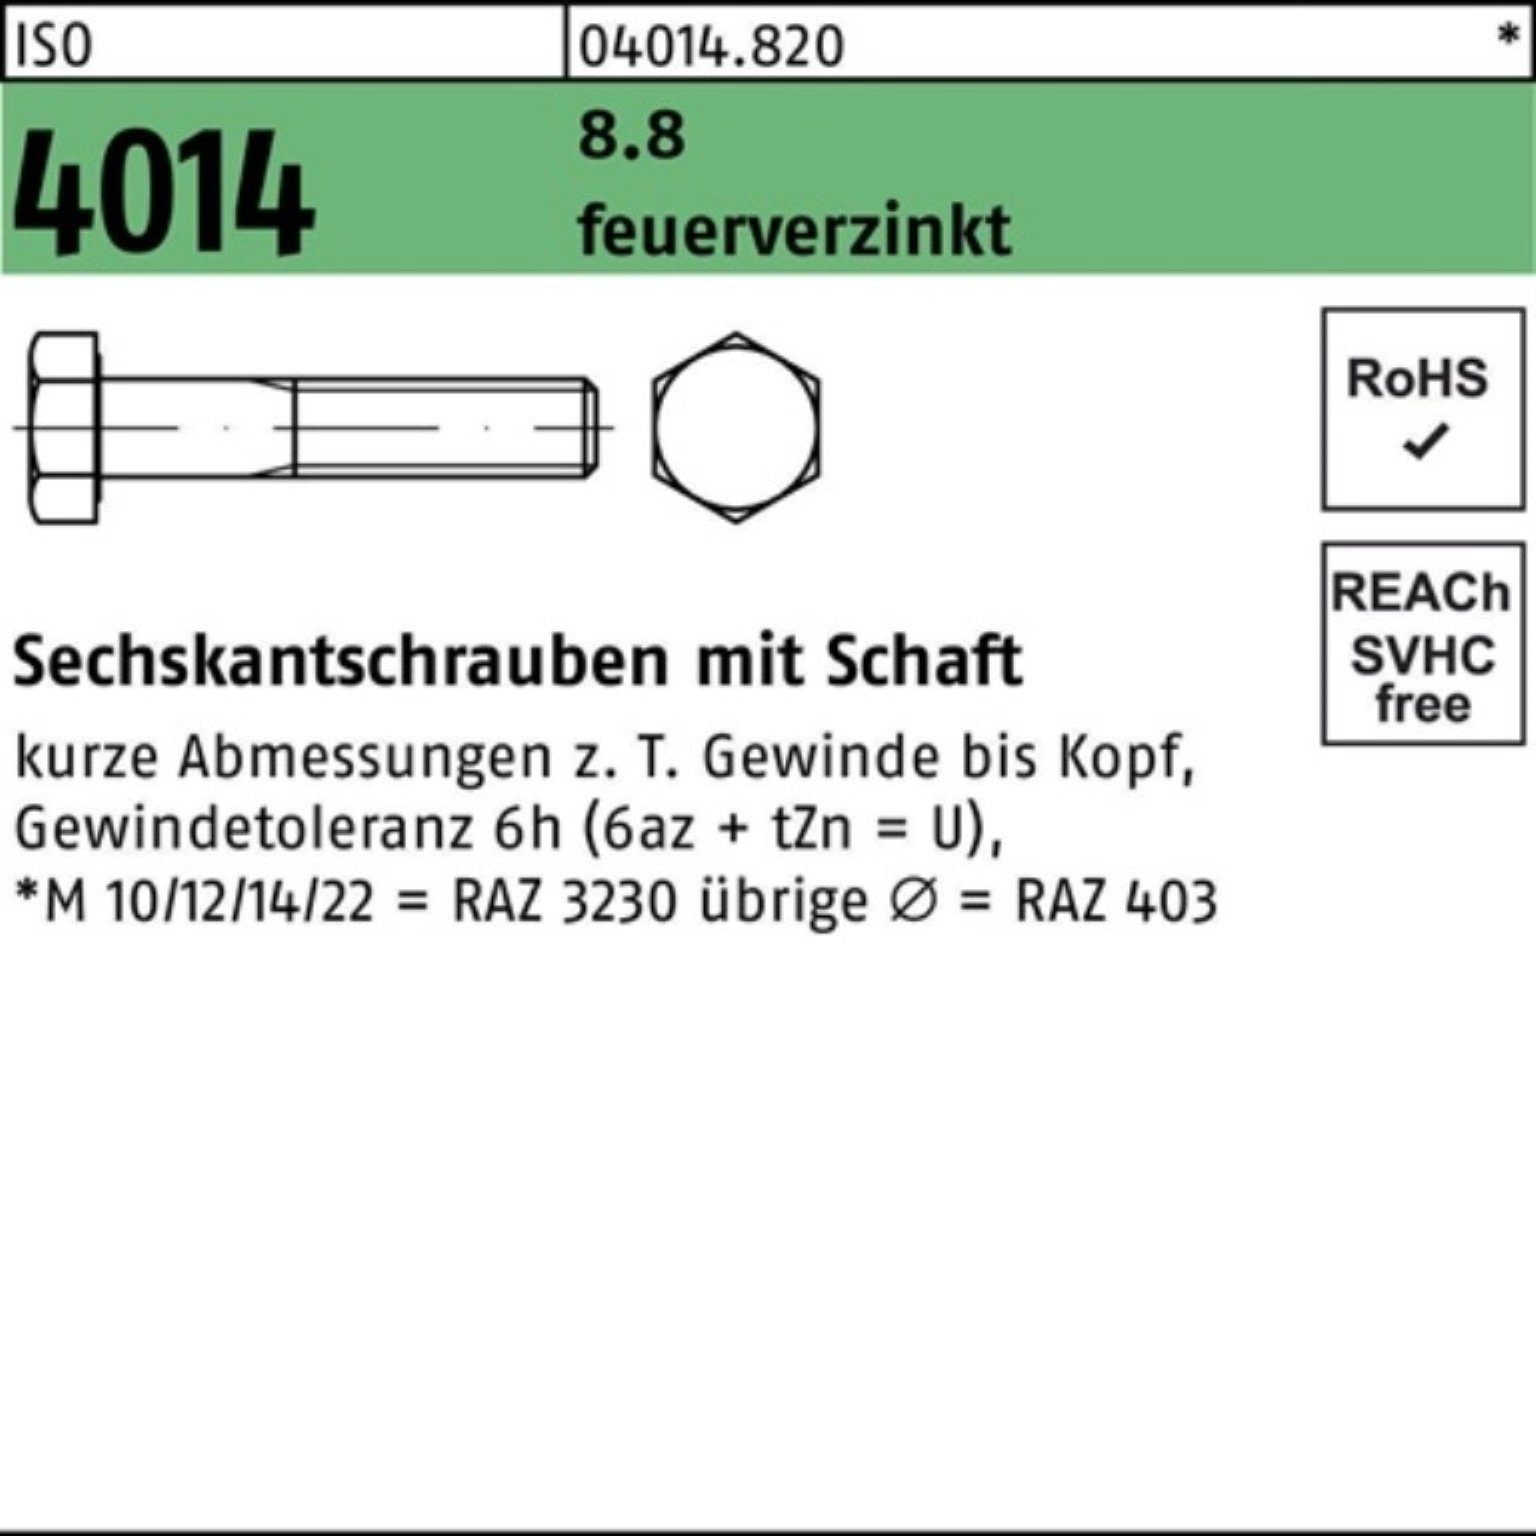 Bufab Sechskantschraube 100er Pack Sechskantschraube ISO 4014 Schaft M16x 100 8.8 feuerverz. 2